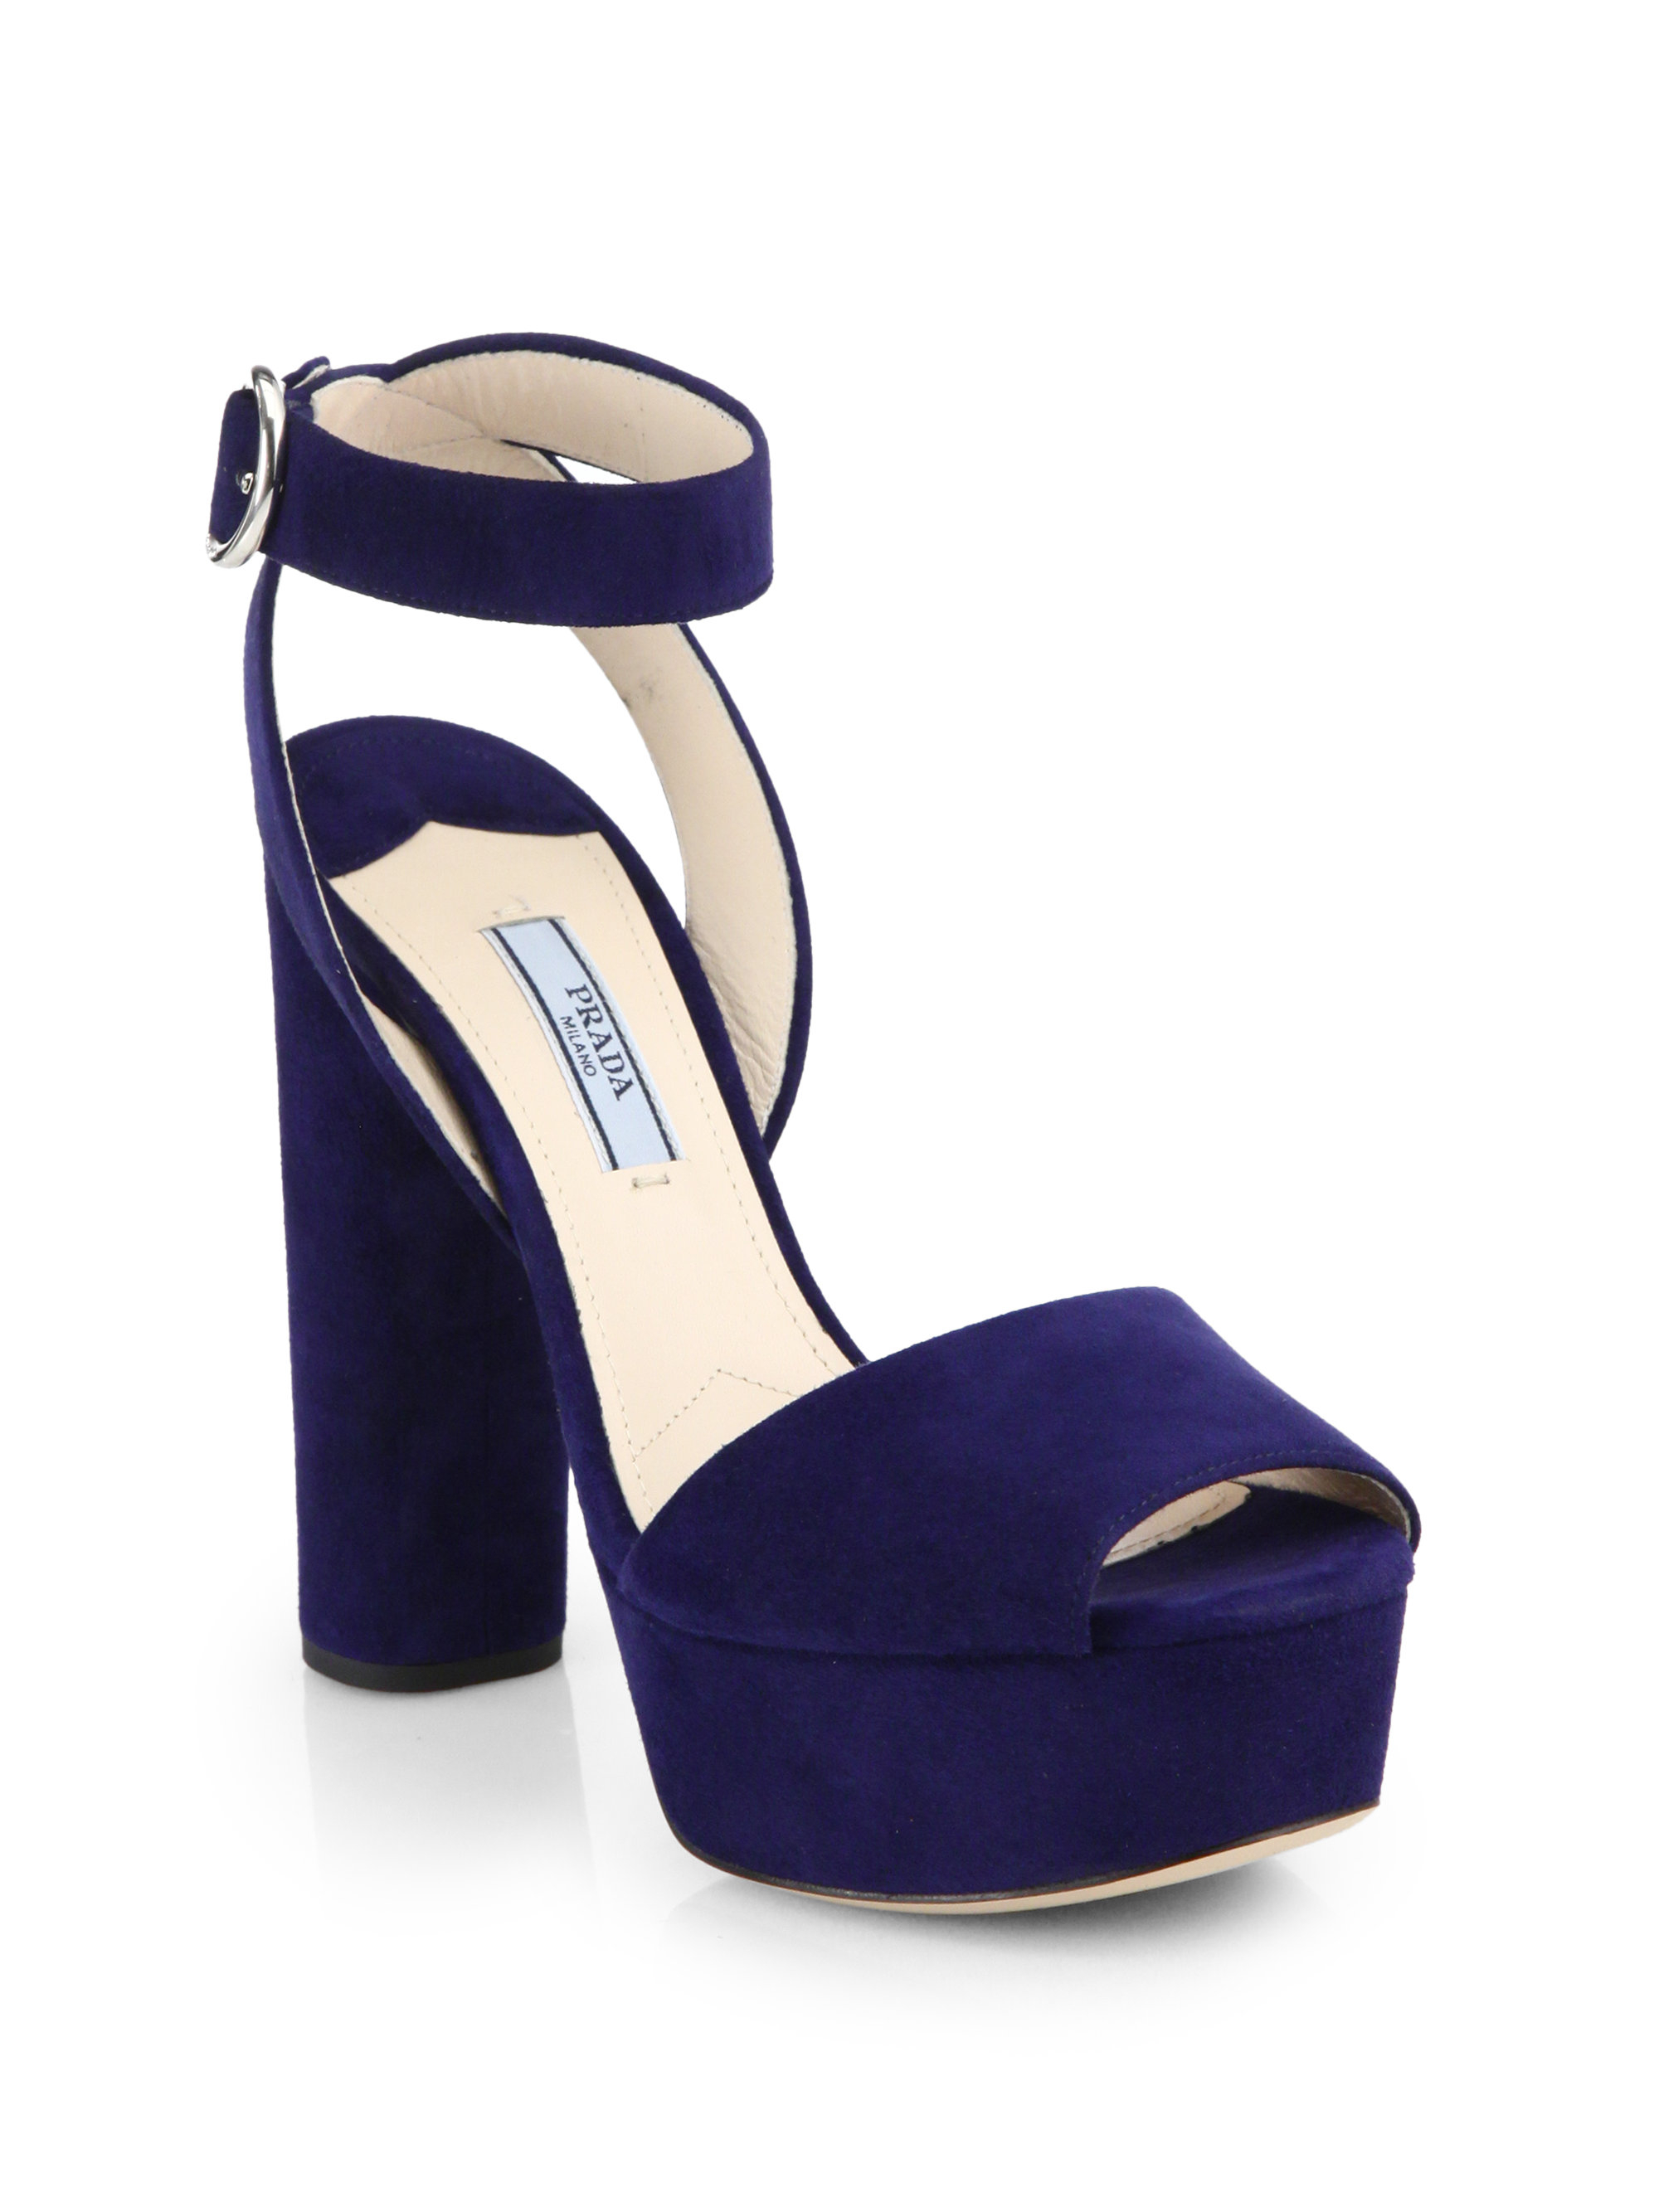 Prada Suede Platform Sandals in Blue - Lyst